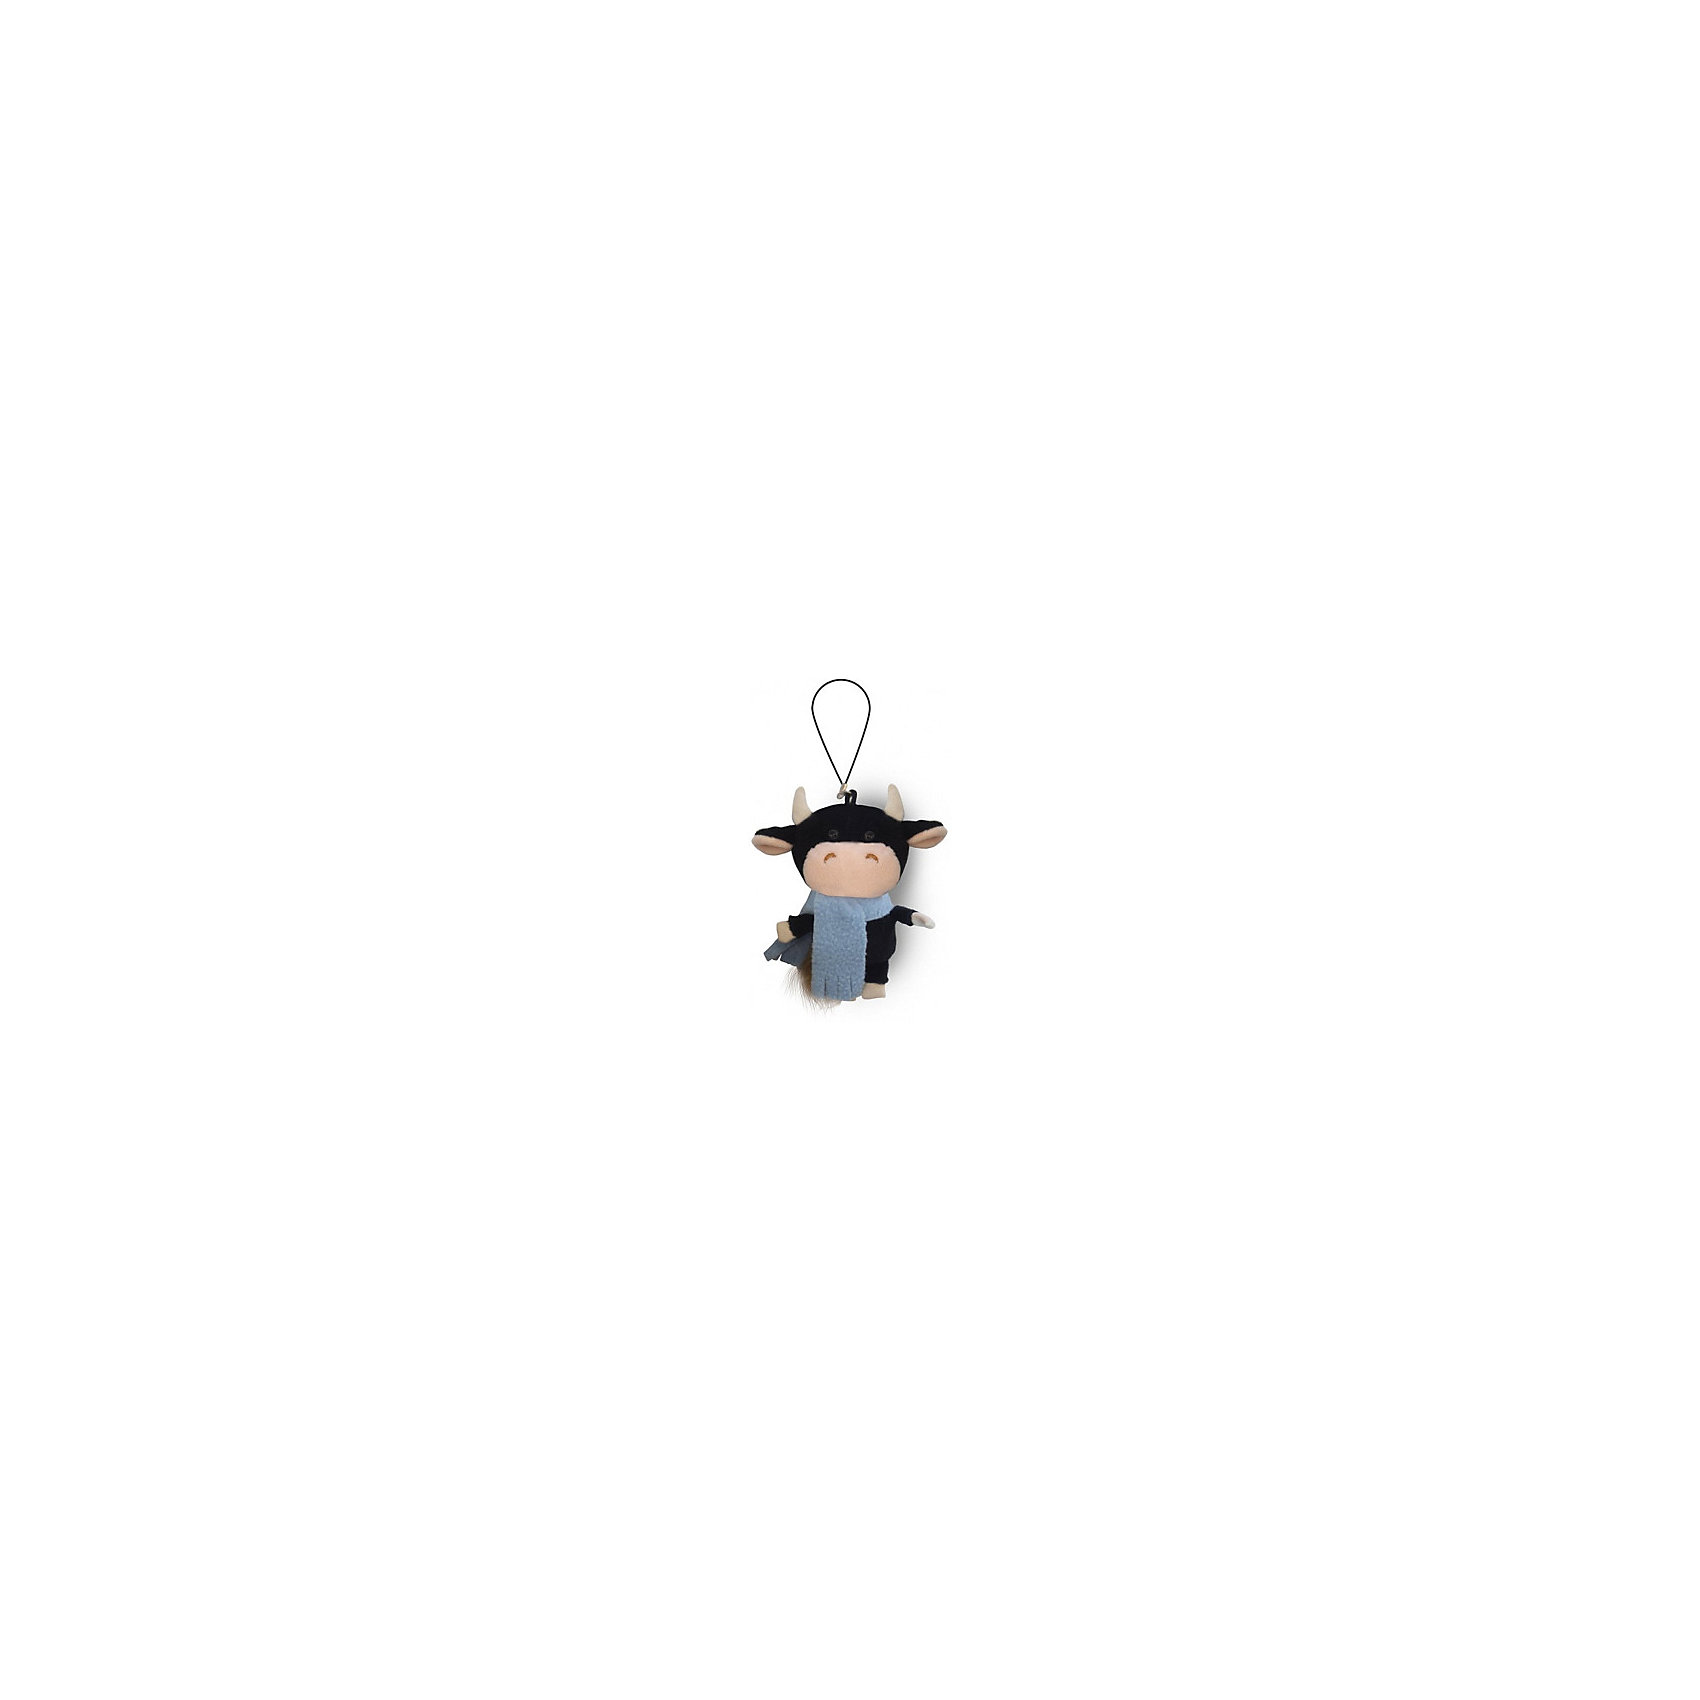 Мягкая игрушка Luxury Бычок черный в голубом шарфике, 11 см MAXITOYS 16898942